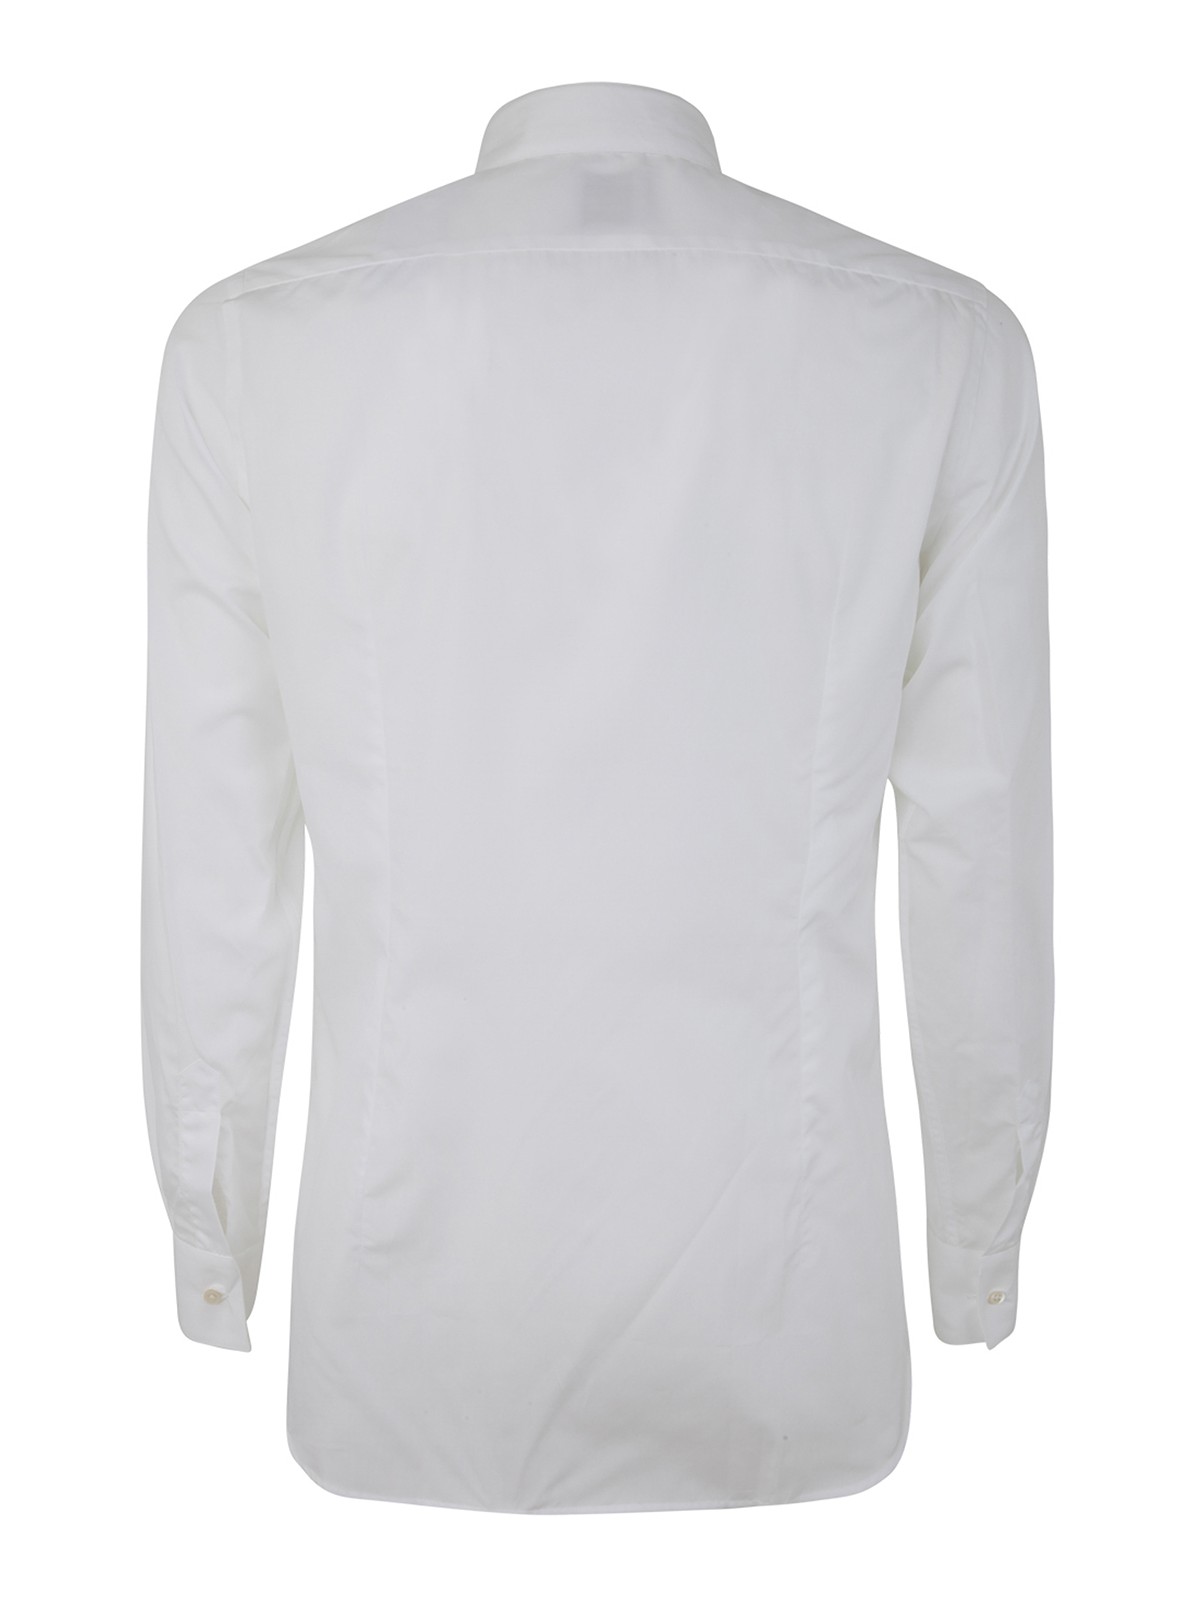 Shop Dnl Shirt In White